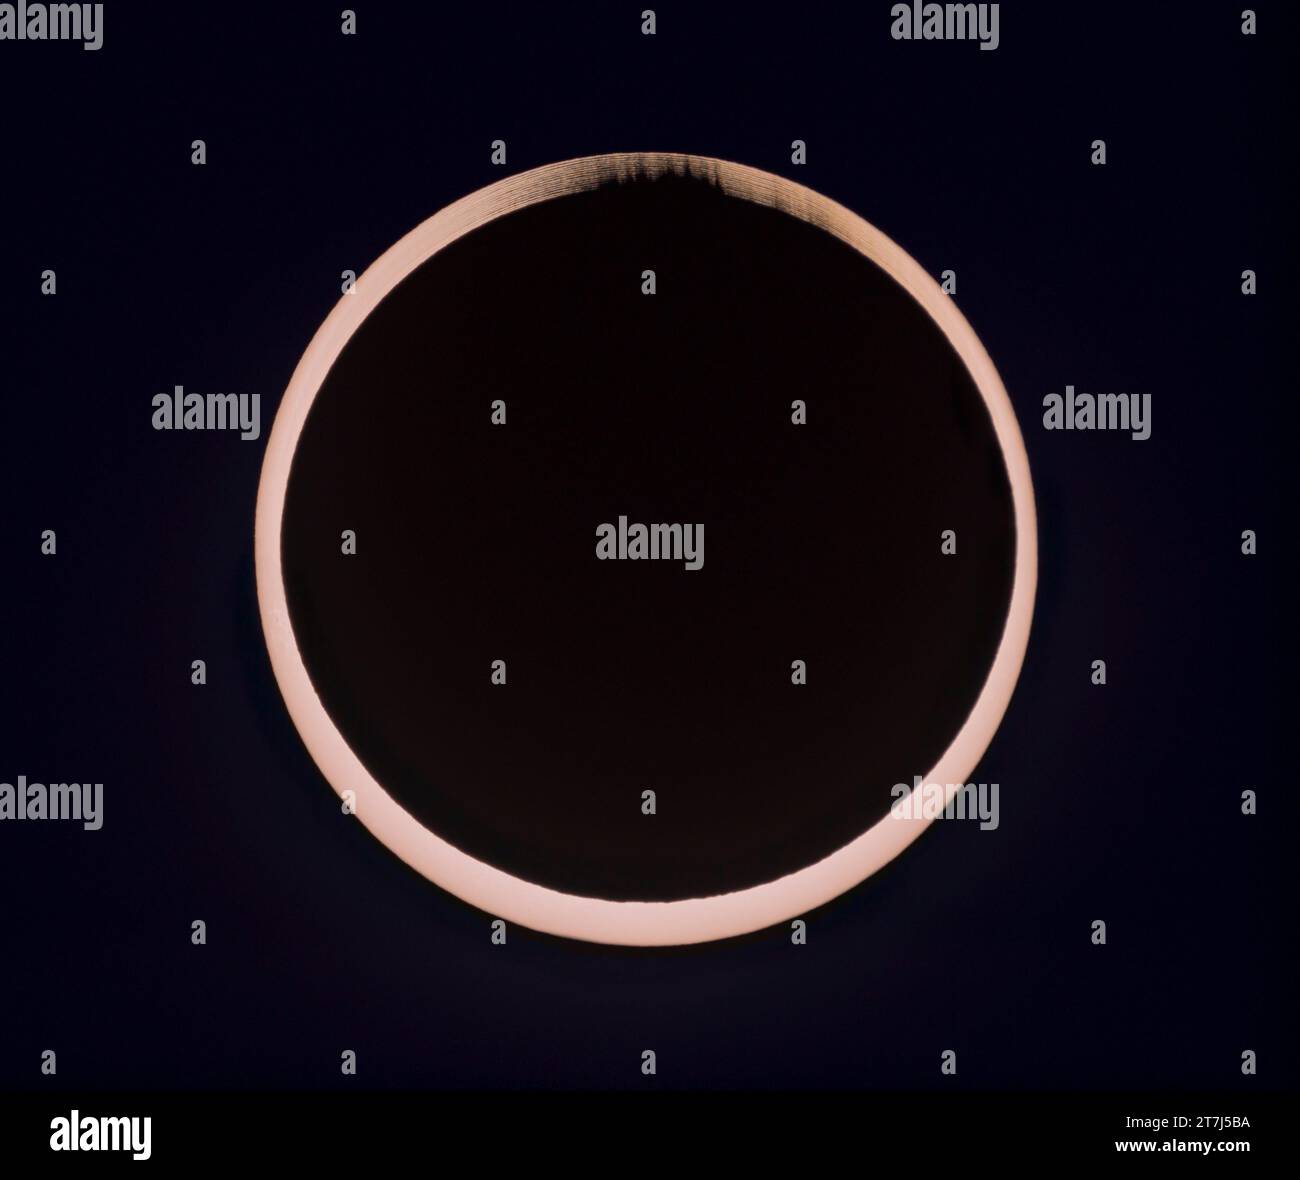 Questo è un composito dell'eclissi solare anulare del 14 ottobre 2023 al secondo contatto. Illustra il bordo irregolare della Luna che rompe il bordo Foto Stock